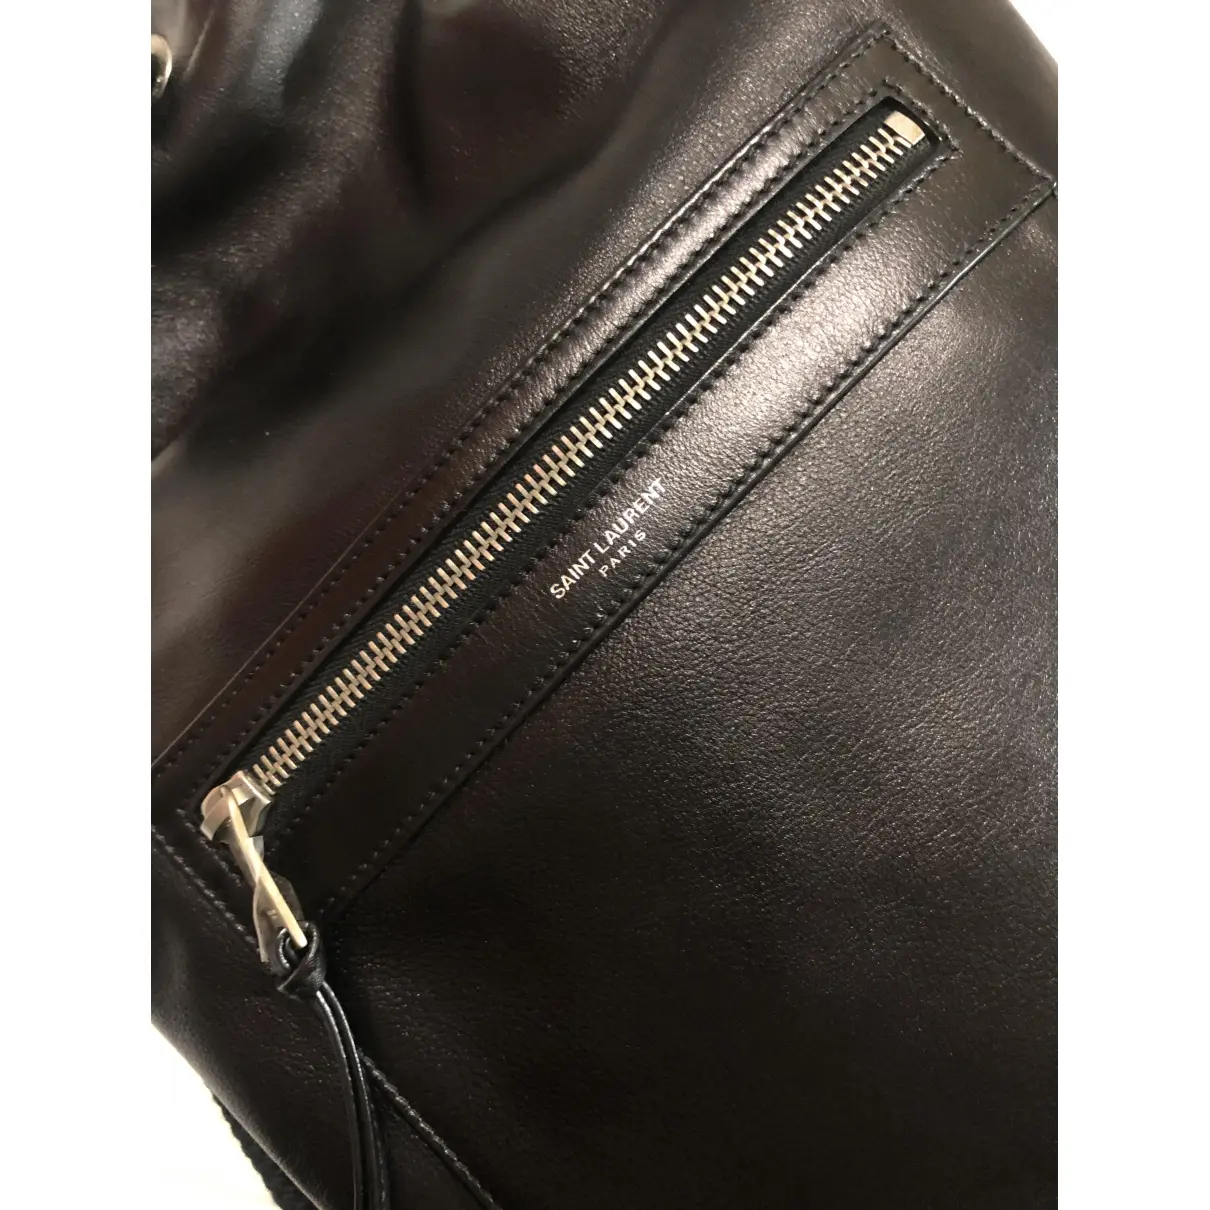 Buy Saint Laurent Leather bag online